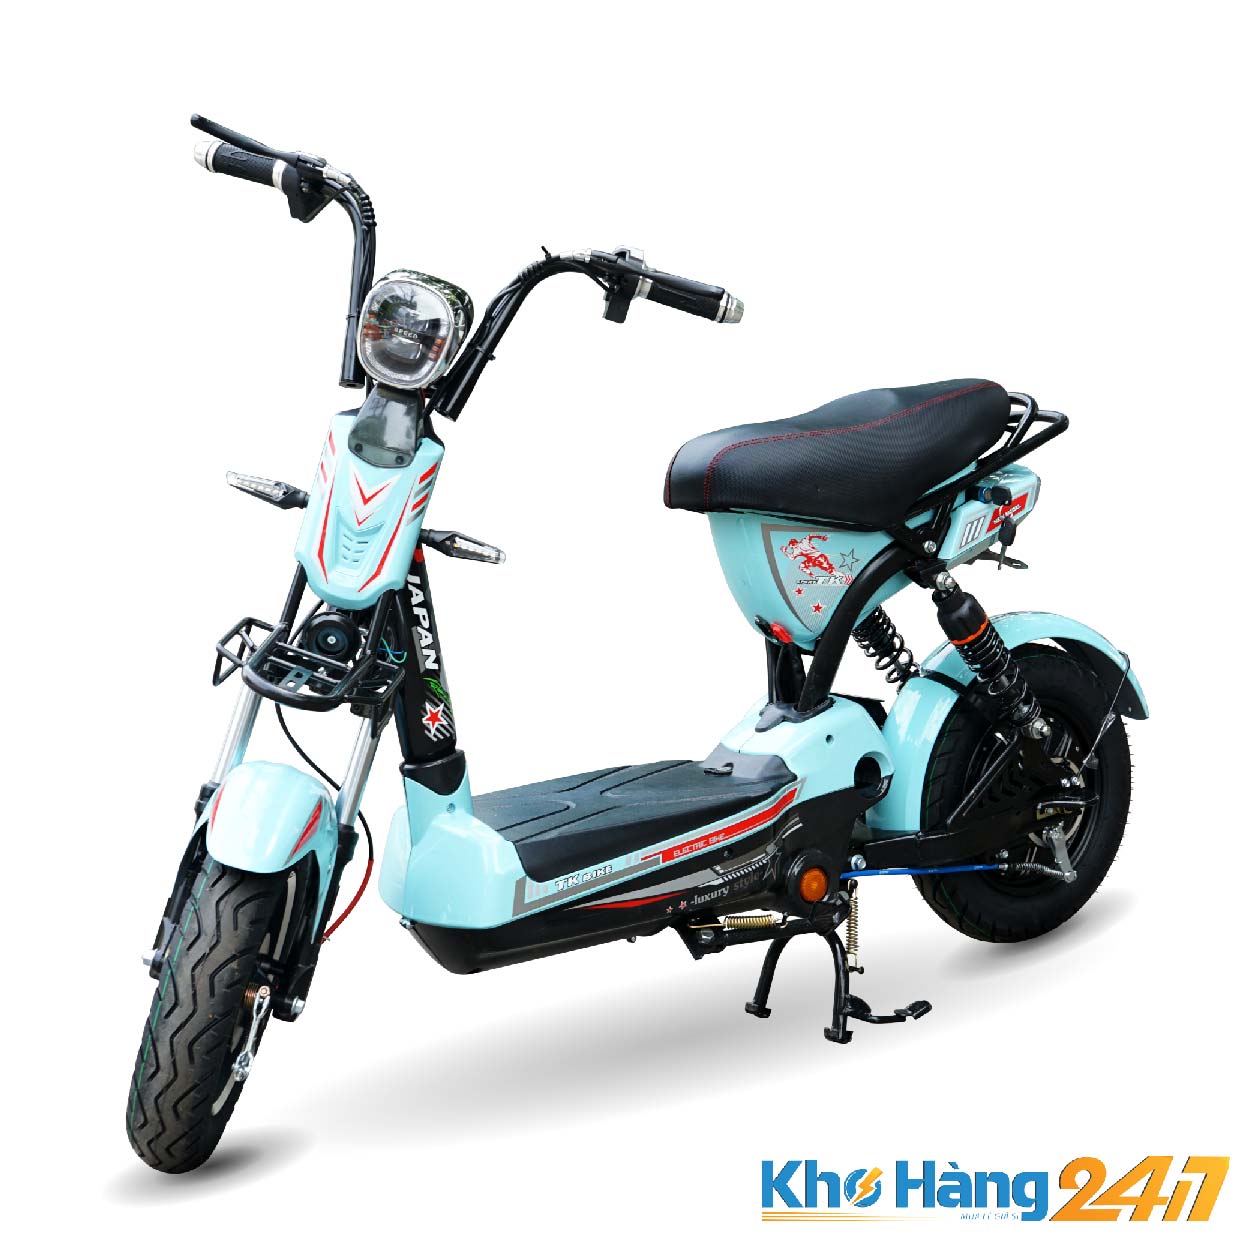 xe dap dien tk bike khohang247 01 - Xe đạp điện TK BIKE